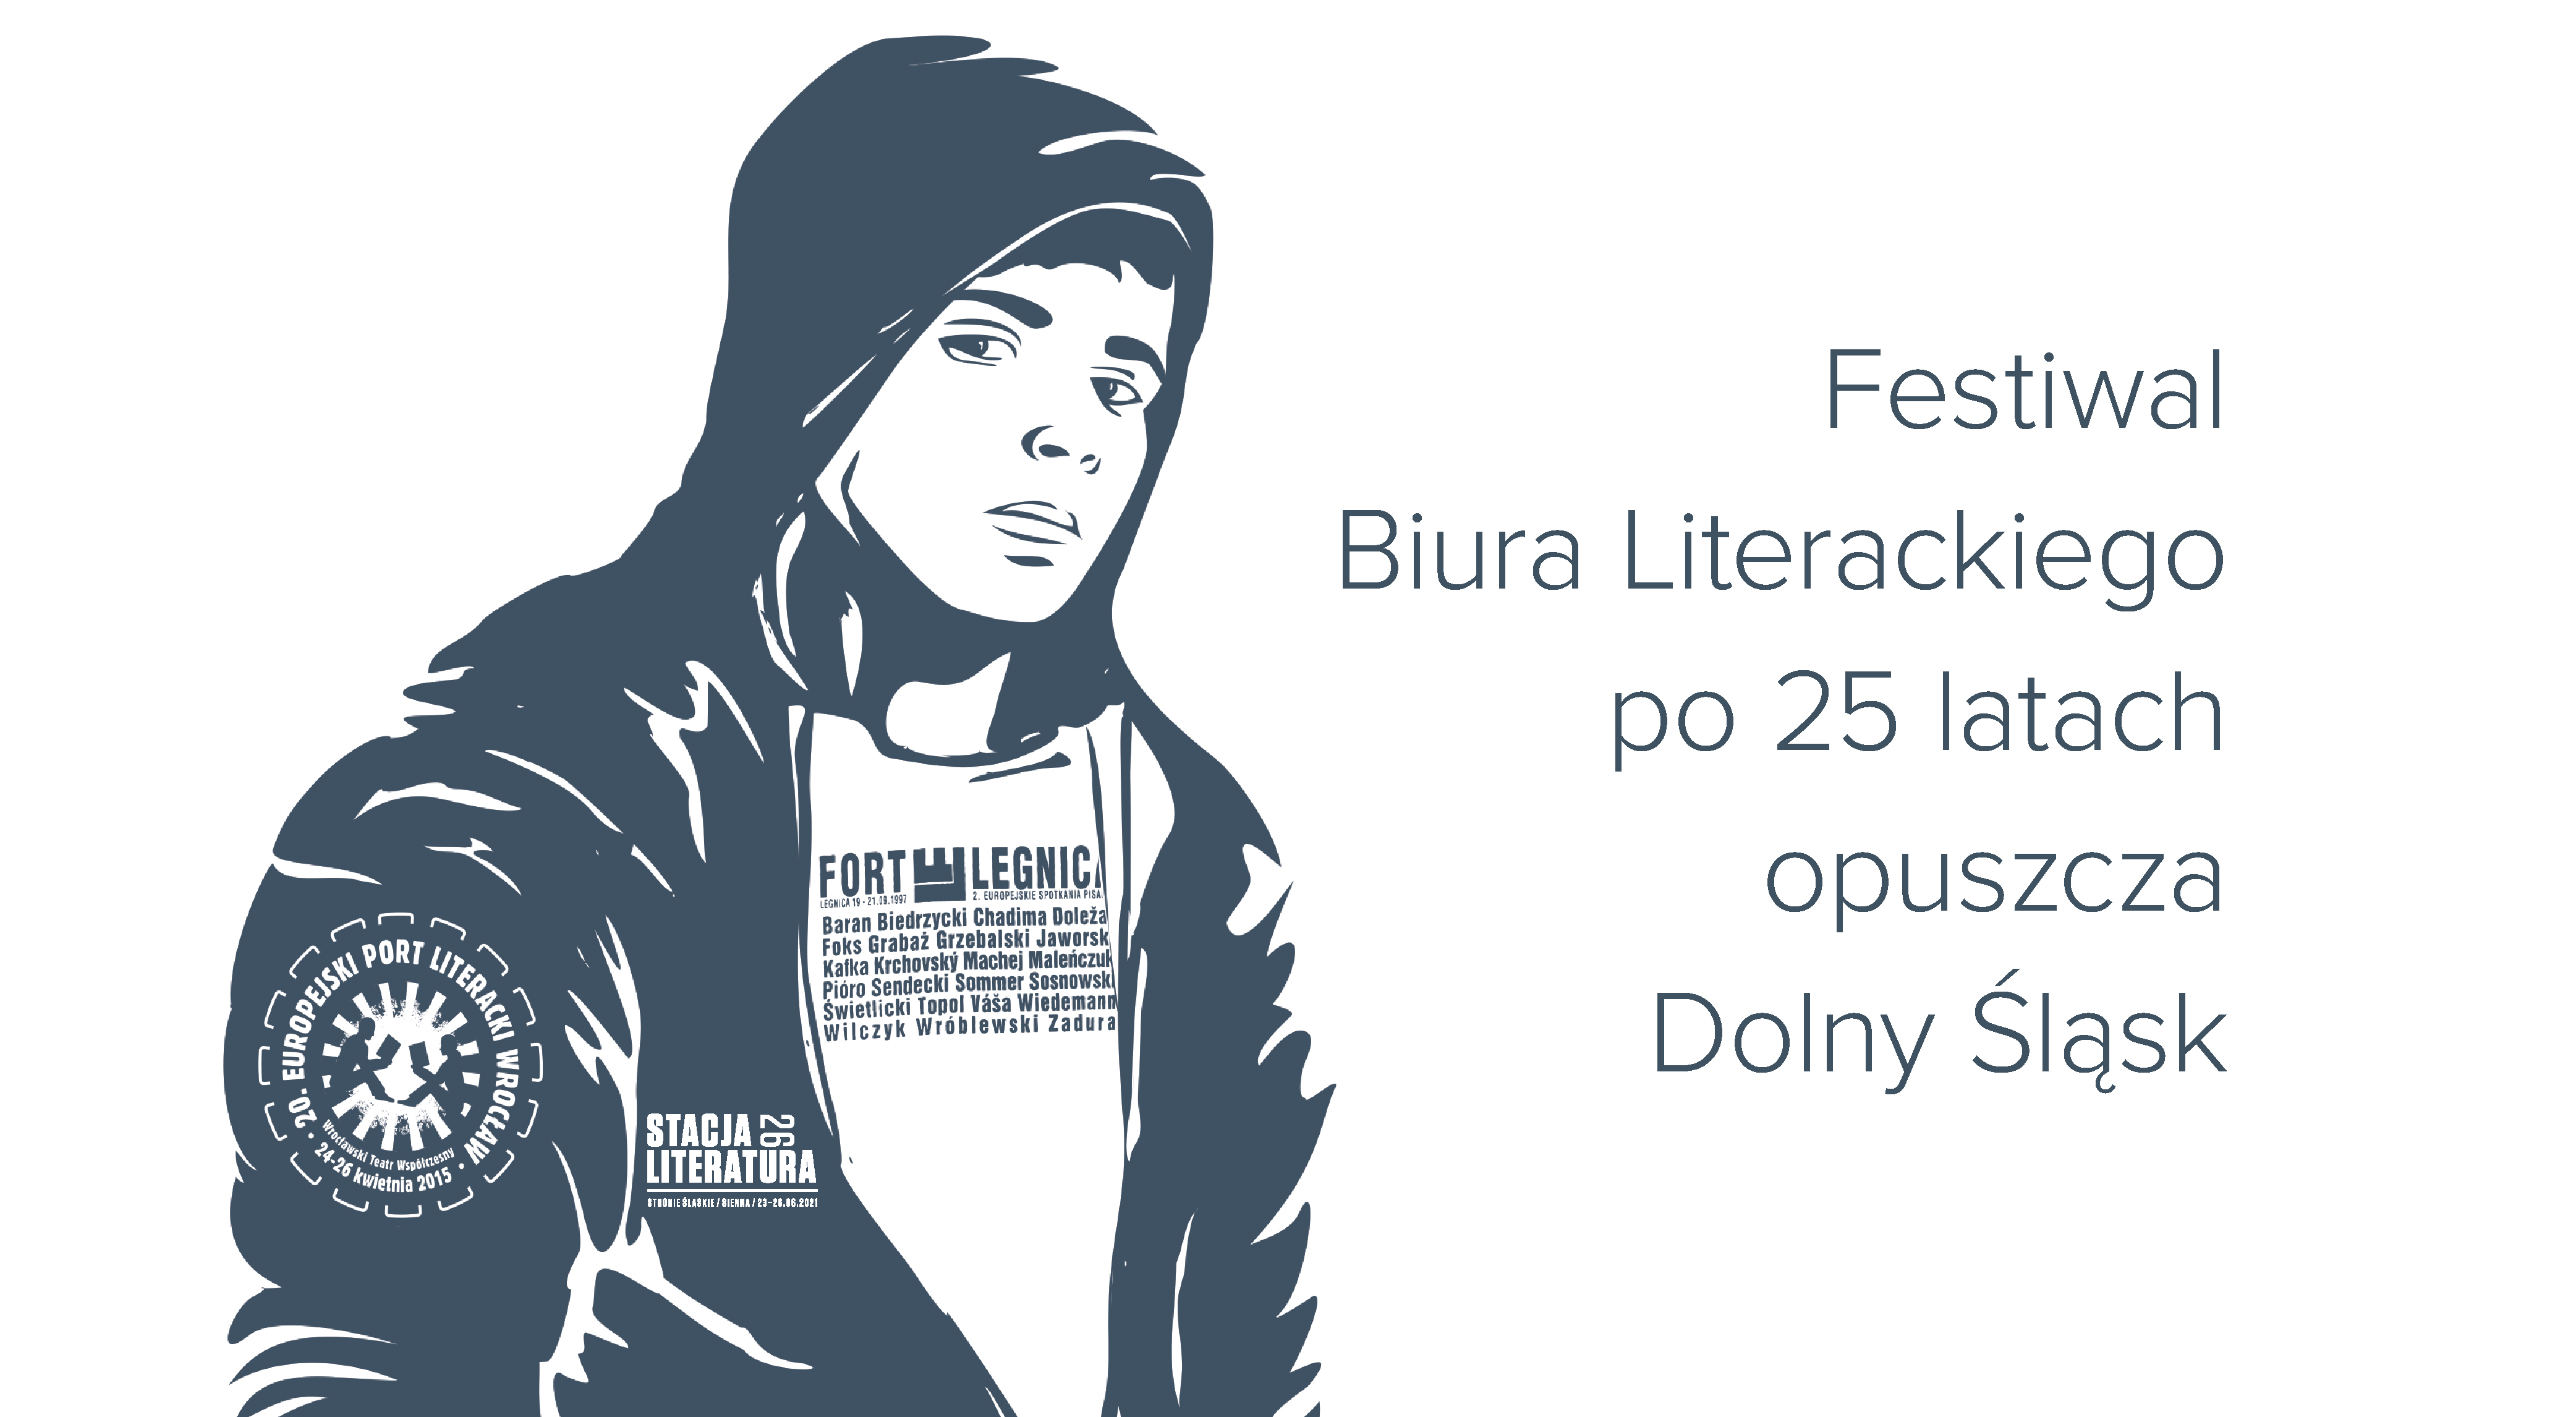 Festiwal Biura Literackiego po 25 latach opuszcza Dolny Śląsk